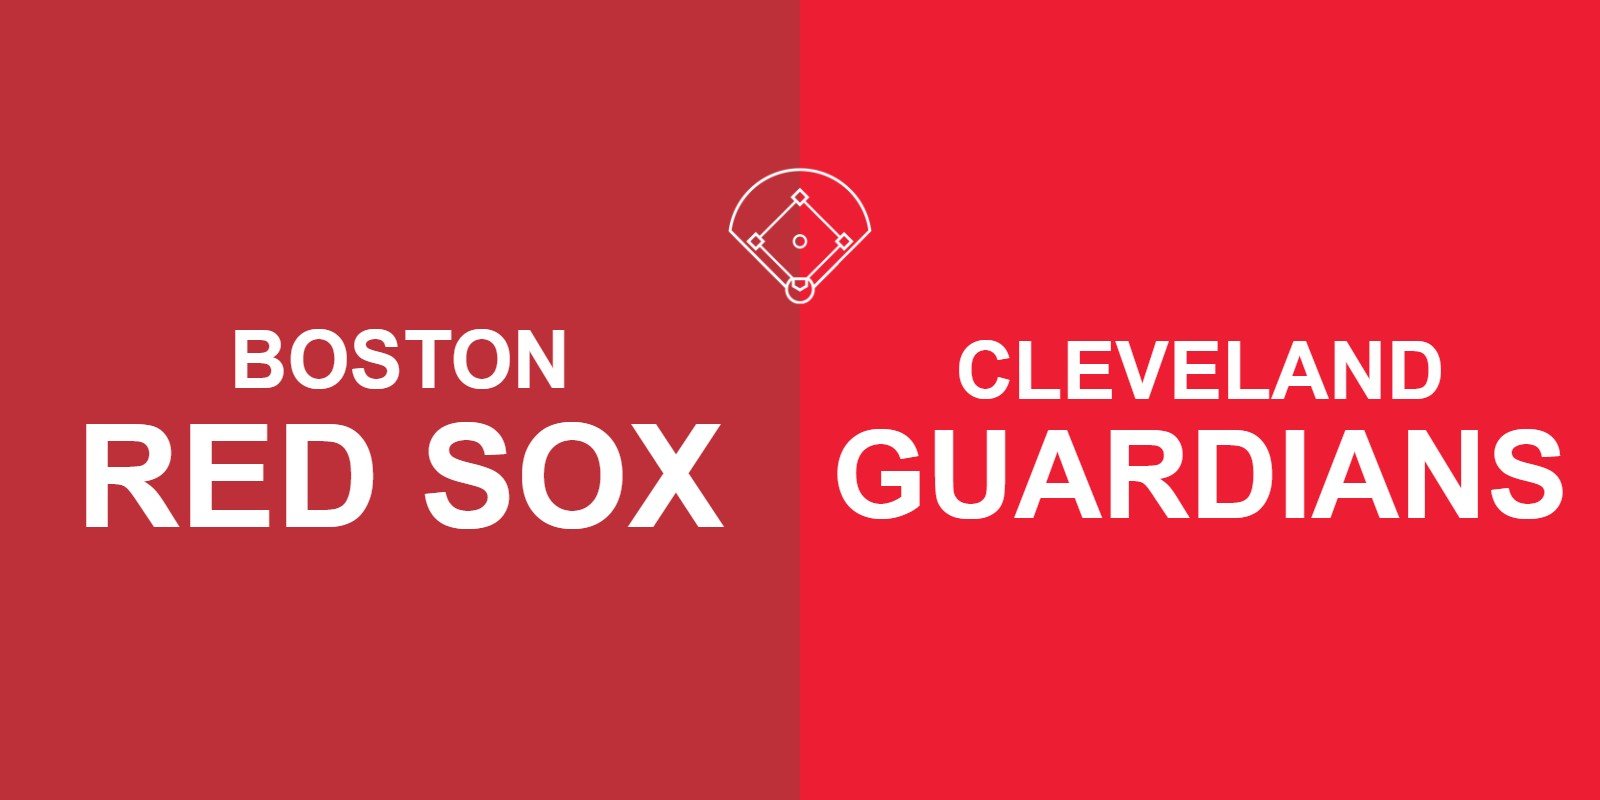 Red Sox vs Guardians